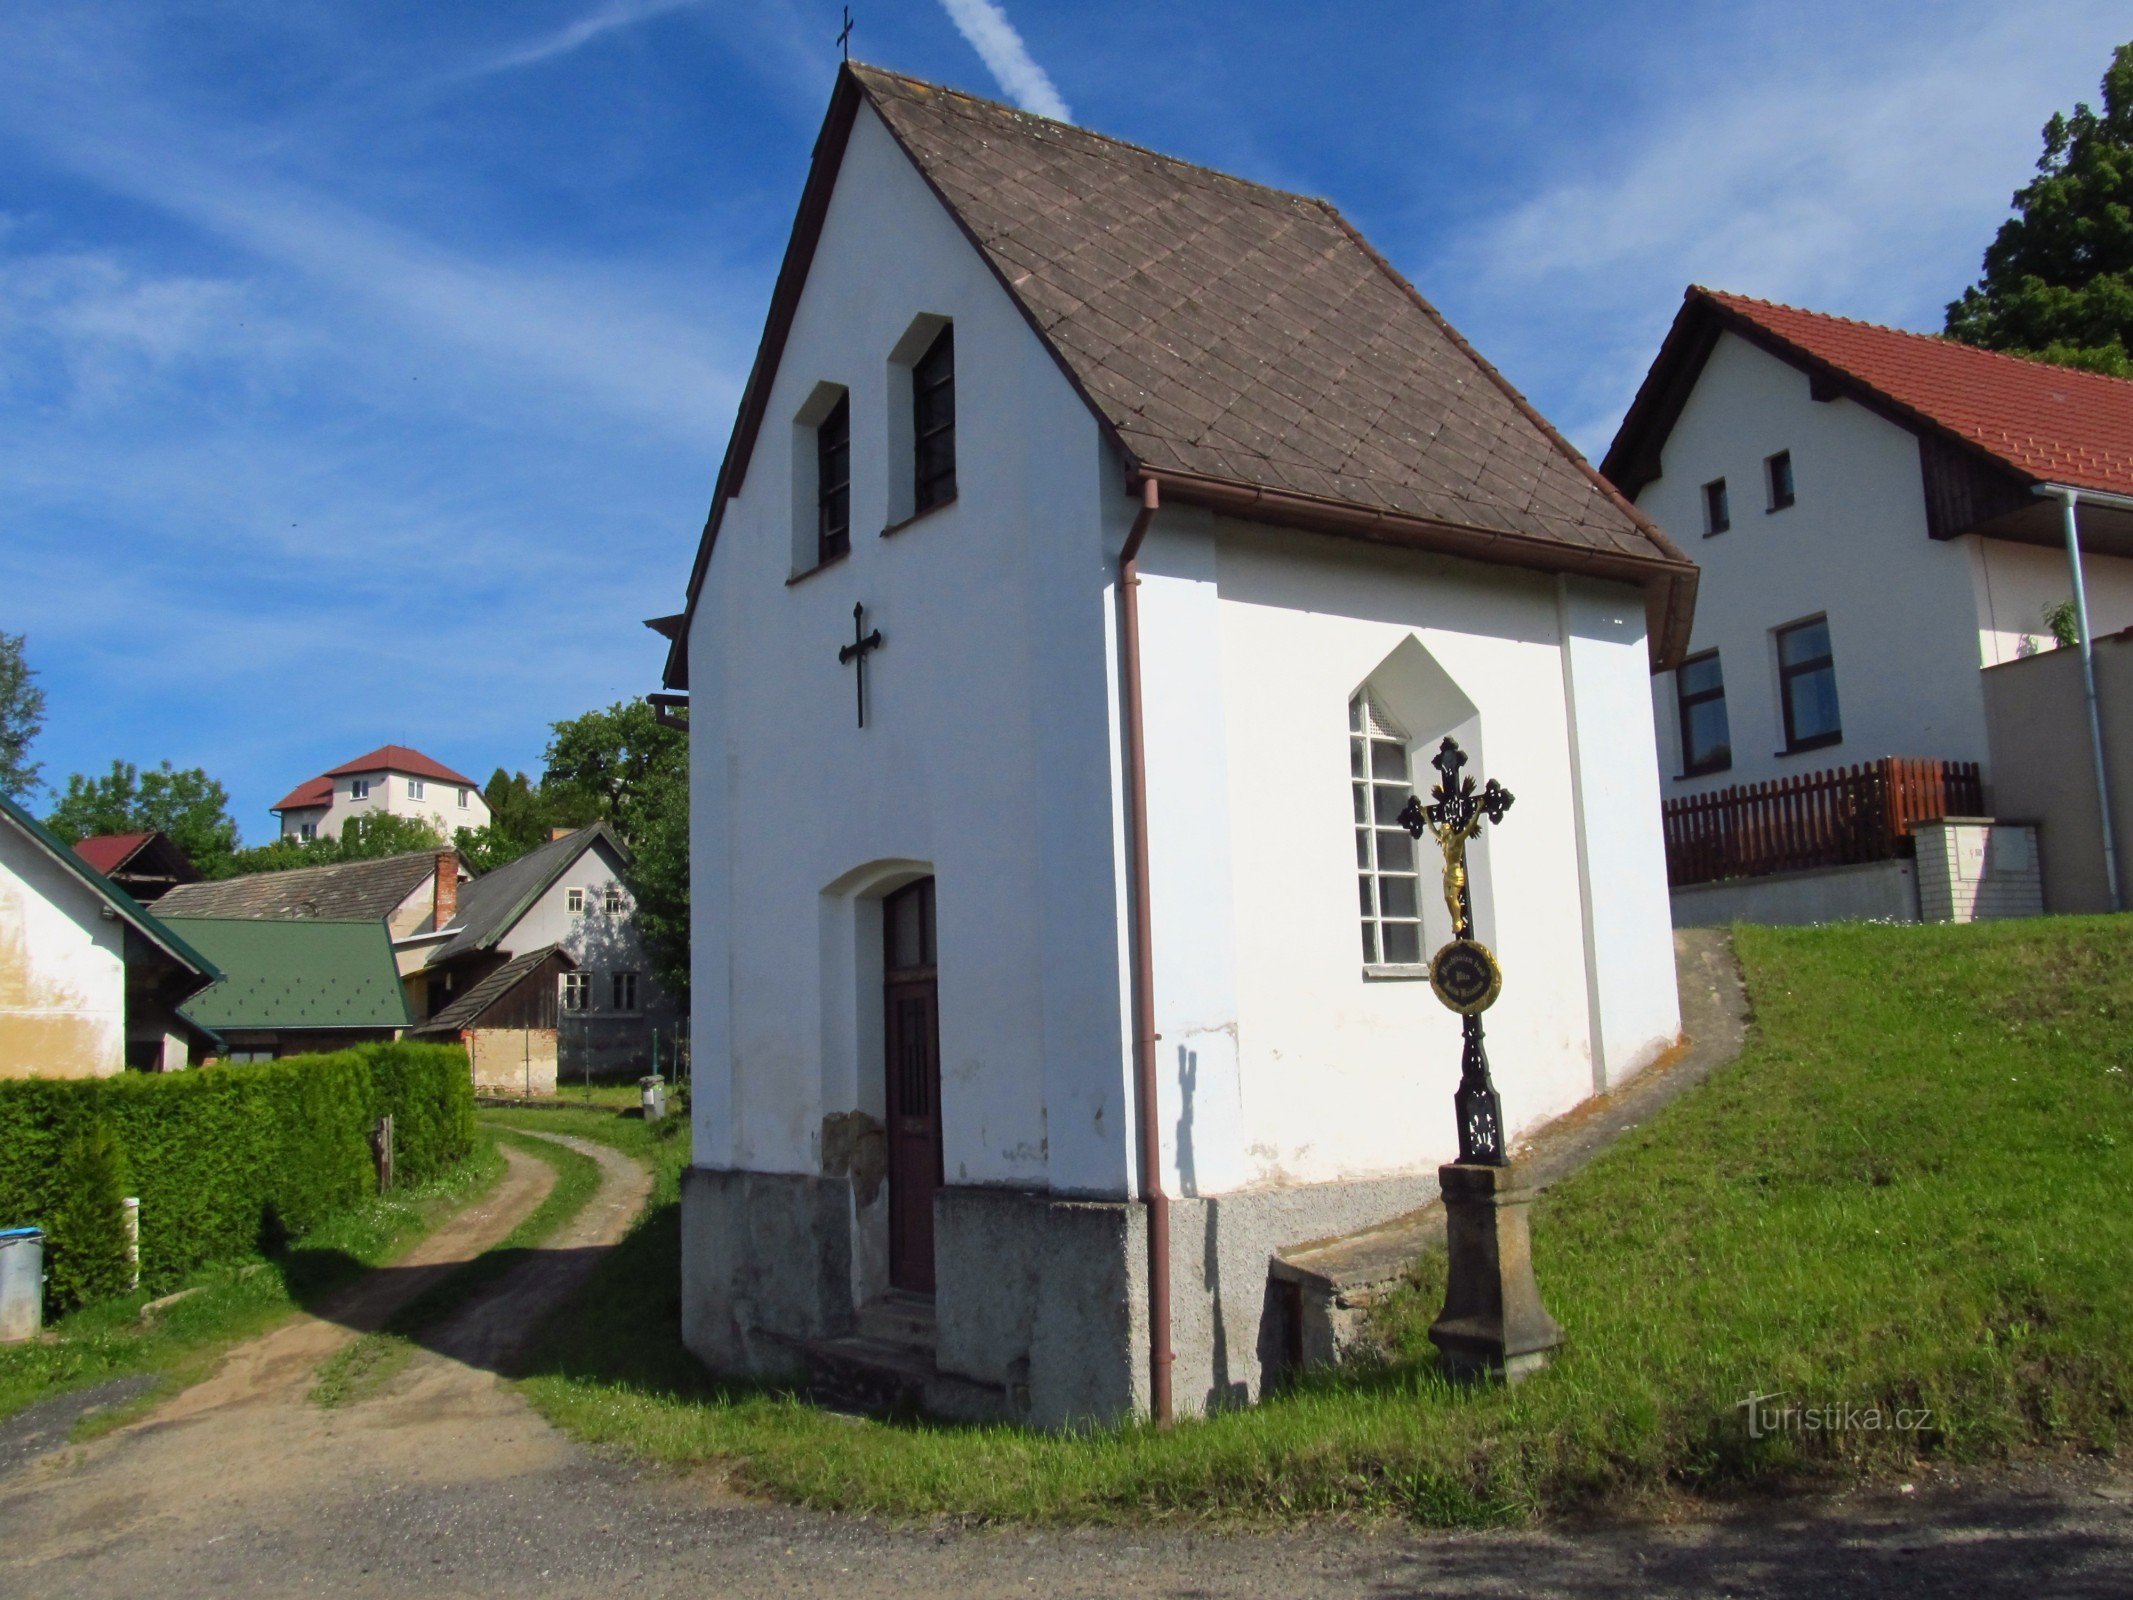 03 Obravn, chapelle